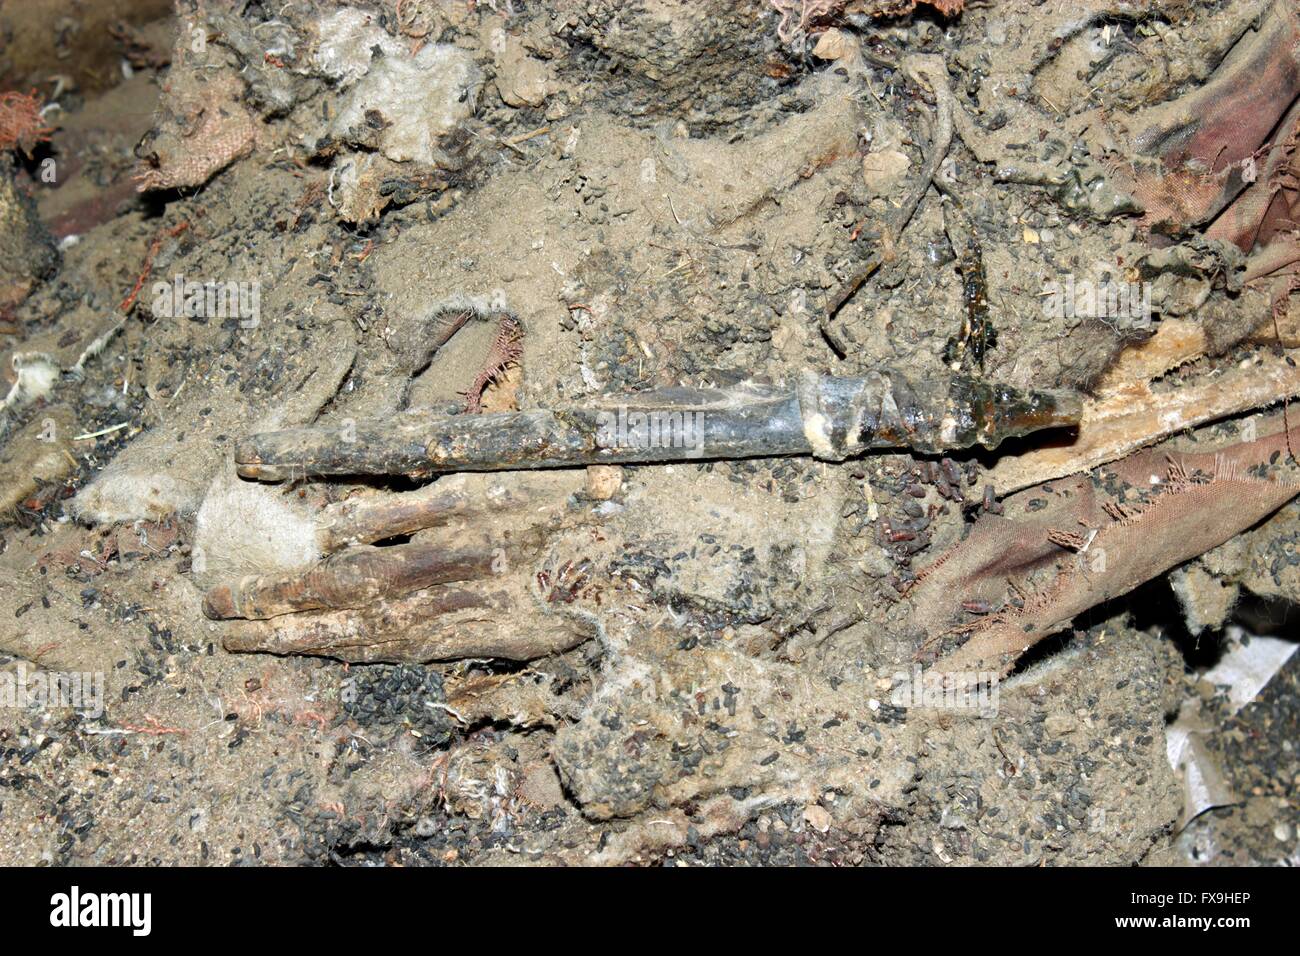 Khovd e Mongolia. Il 13 aprile 2016. Foto scattata il 5 aprile 2016 mostra le dita di un antico mummia scavata in Khovd e Mongolia. Il raro intatte antiche mummia è stata scavata da un grave in remoto della Mongolia occidentale provincia di Khovd, un ricercatore con il Museo di Khovd Xinhua ha detto il 13 aprile. Prima di questo mese, locale gli archeologi hanno scavato anche set completi di selle e briglie, argilla vasi, ciotole di legno, metallo bollitori e sacrificati cavalli dalla tomba, che erano in una cavità di roccia ad una altitudine di 2,803 metri di Munkhkhairkhan county. Credito: Xinhua/Alamy Live News Foto Stock